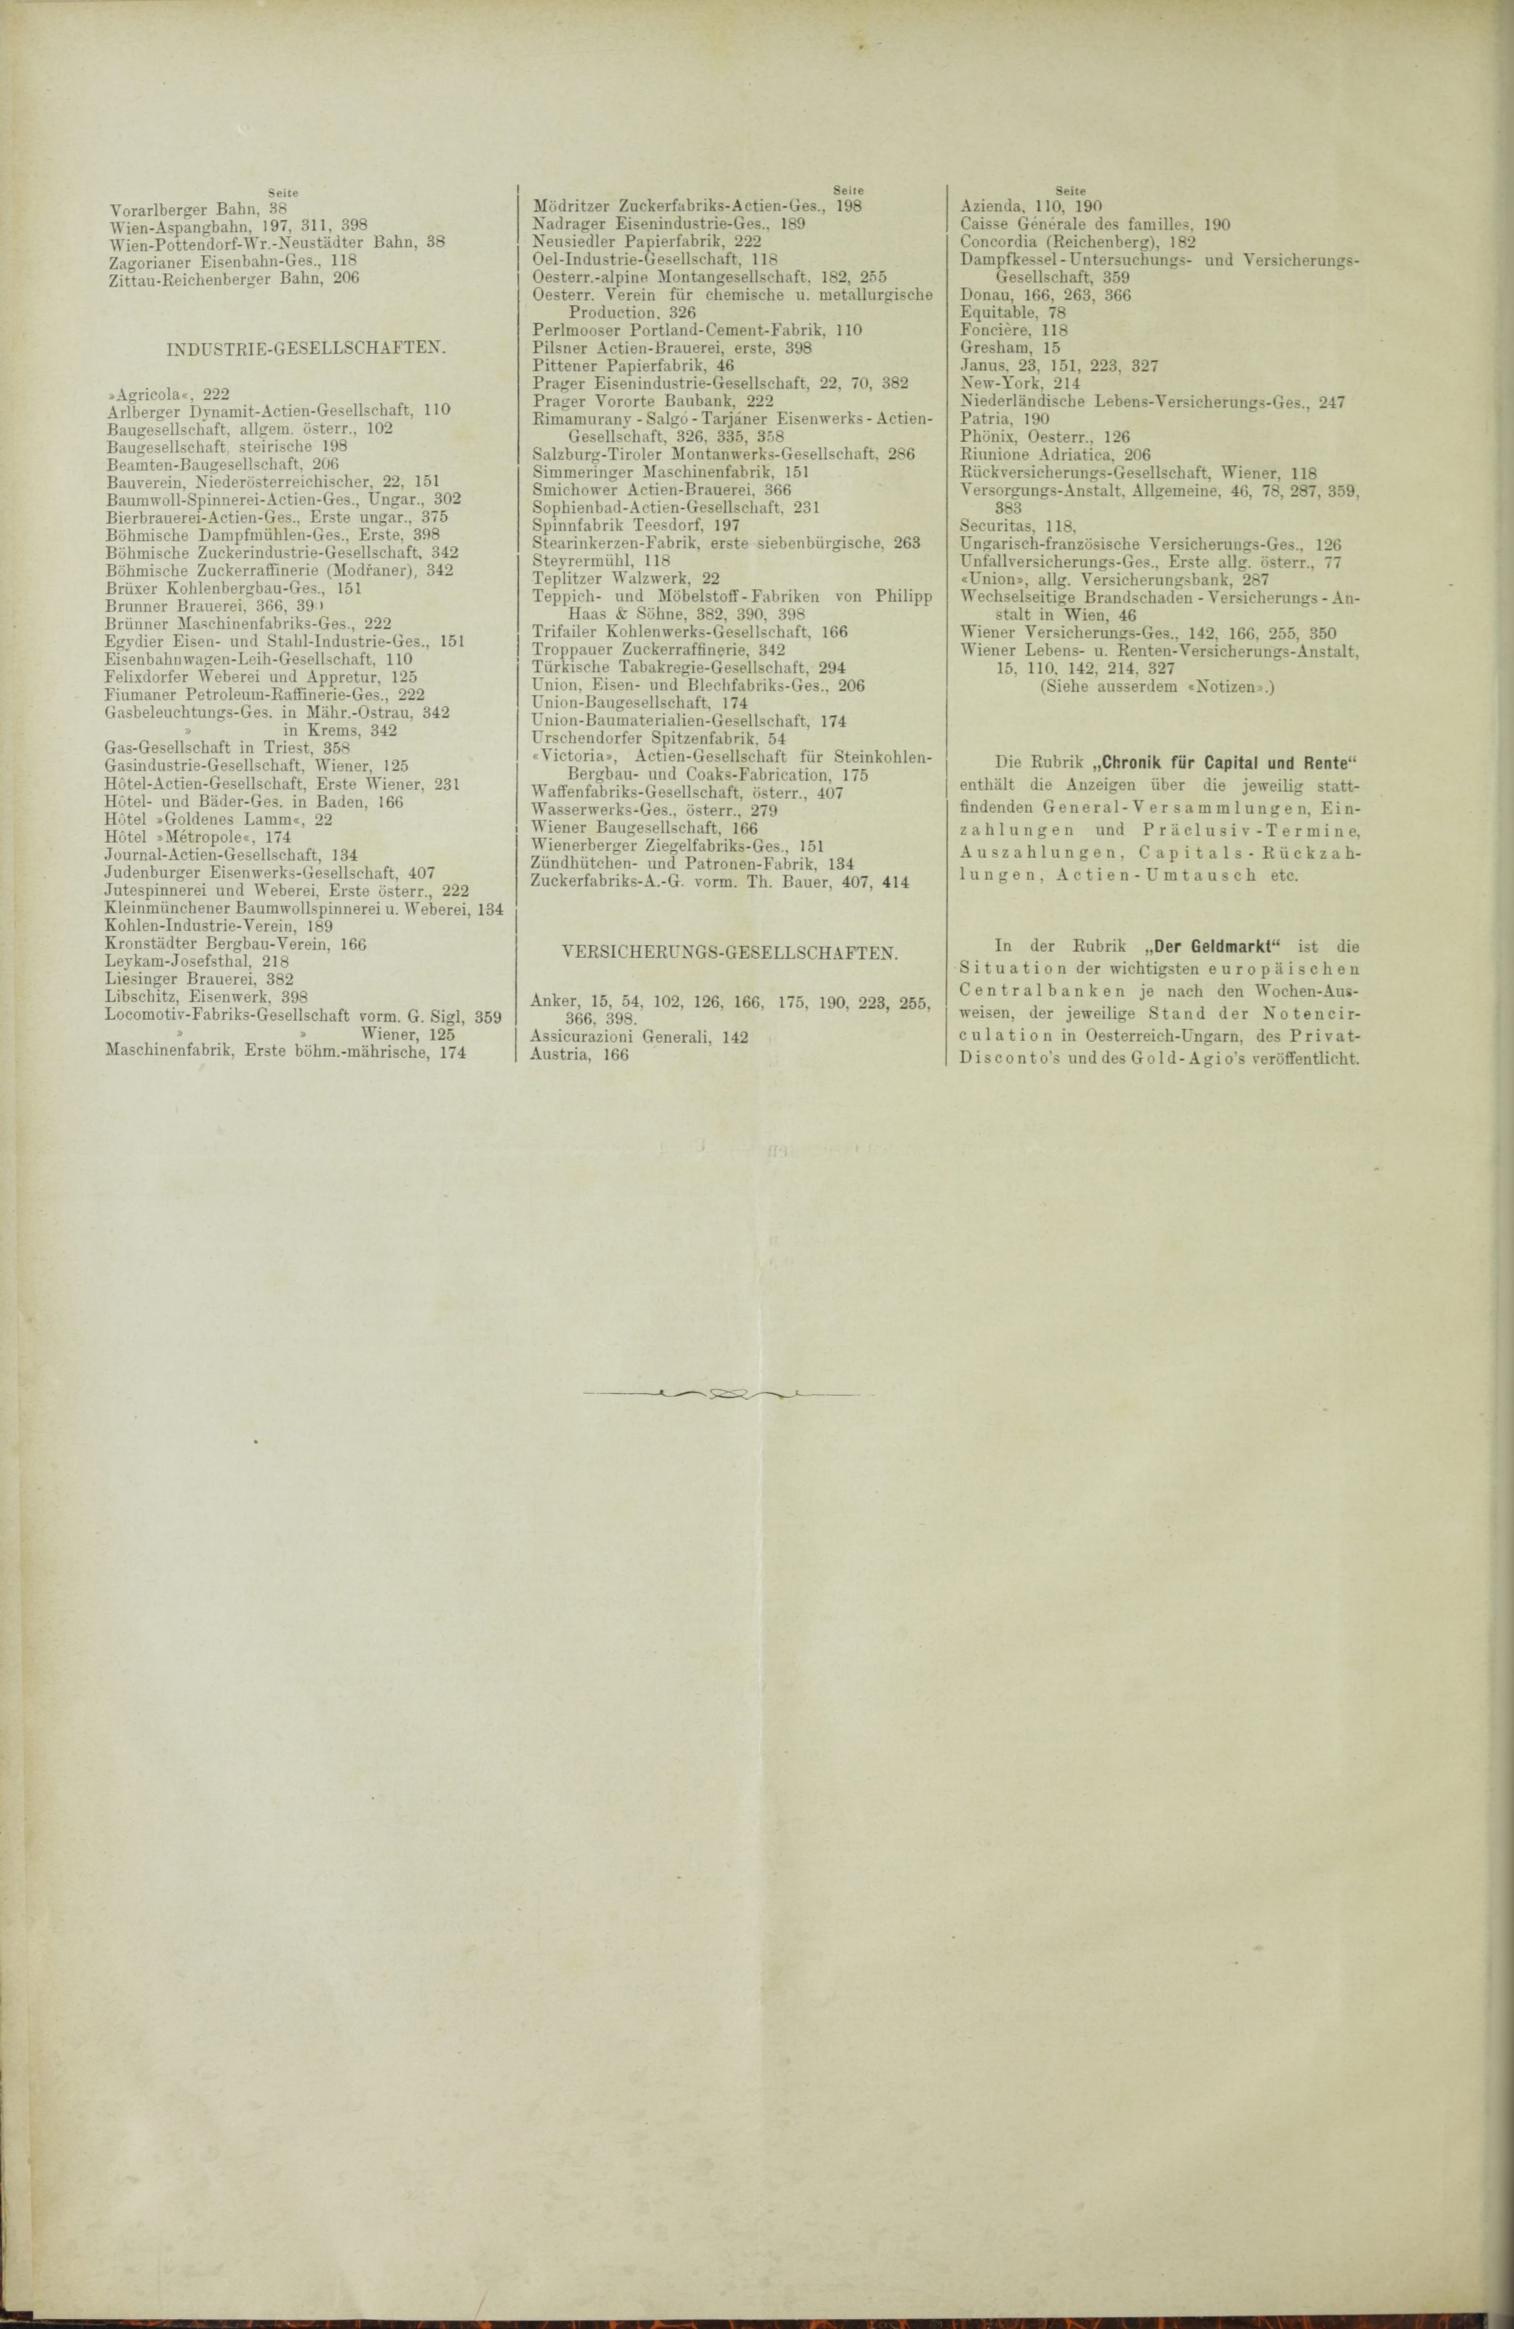 Der Tresor 11.03.1886 - Seite 12